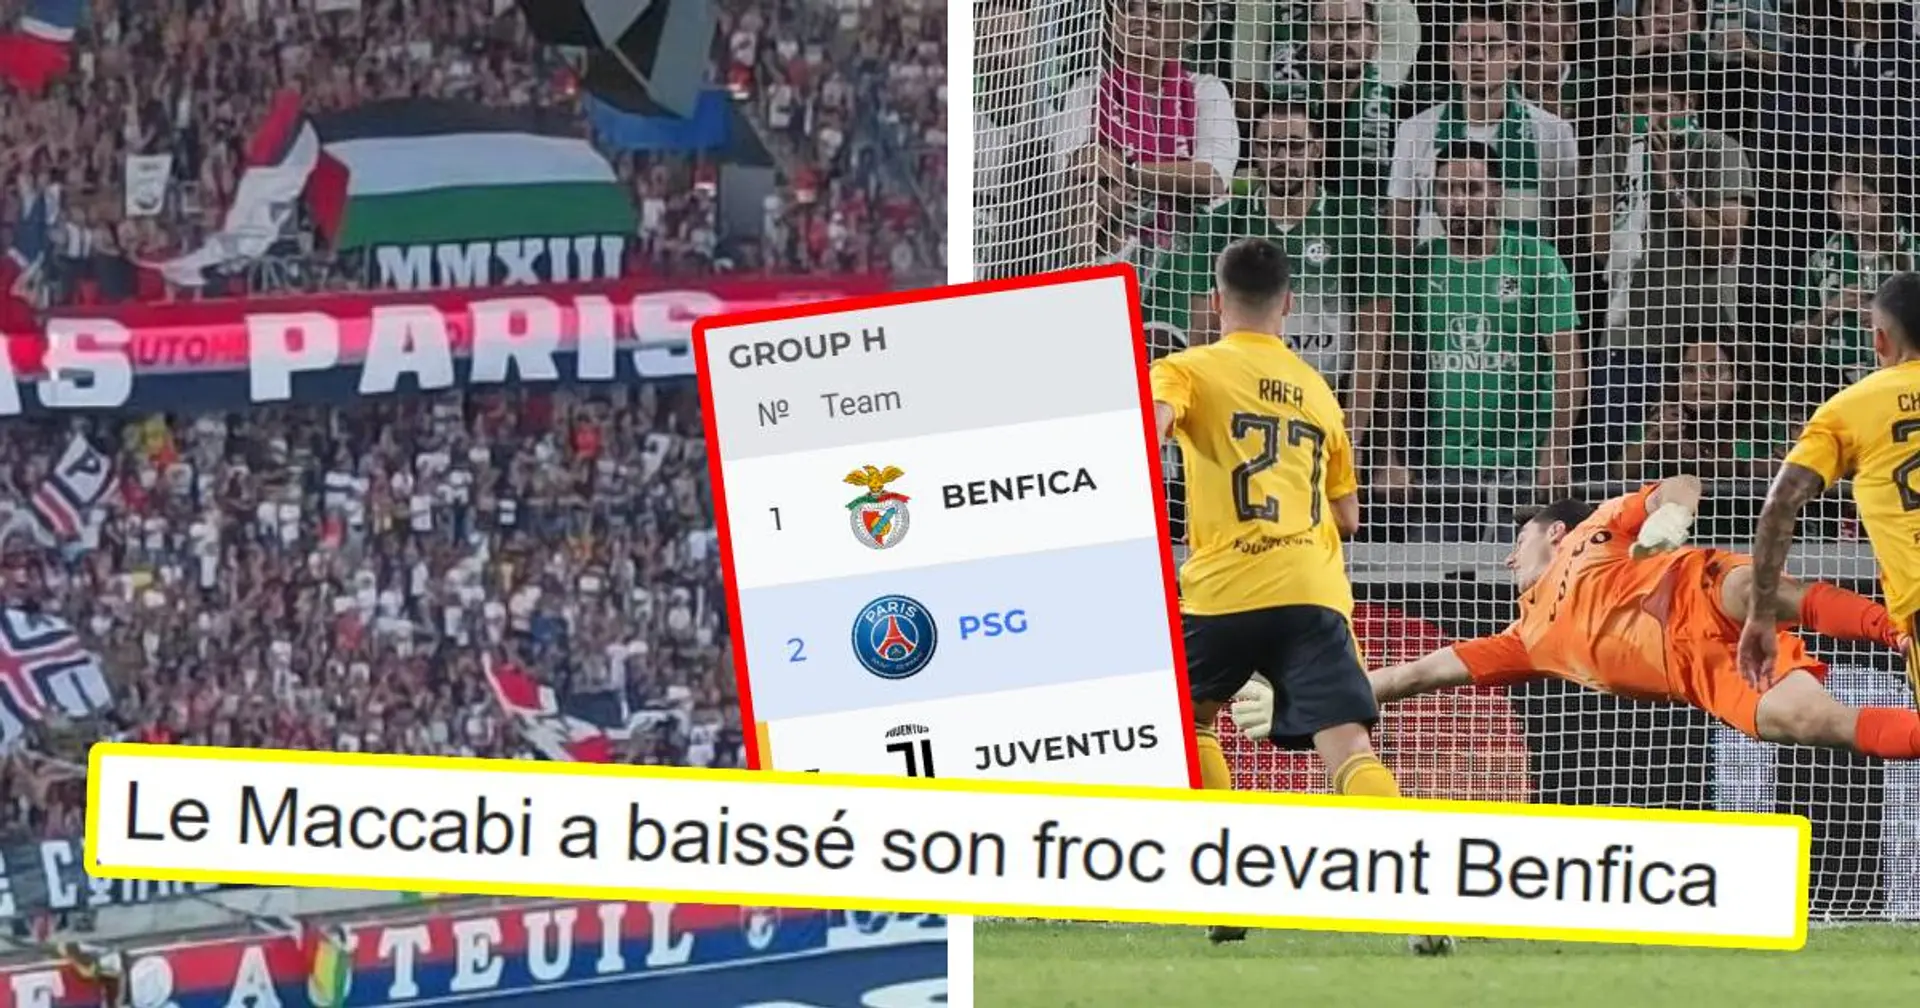 "Ils ont laissé le Benfica marquer" : les fans du PSG soupçonnent le Maccabi Haïfa d'avoir lâché le match vs Benfica exprès